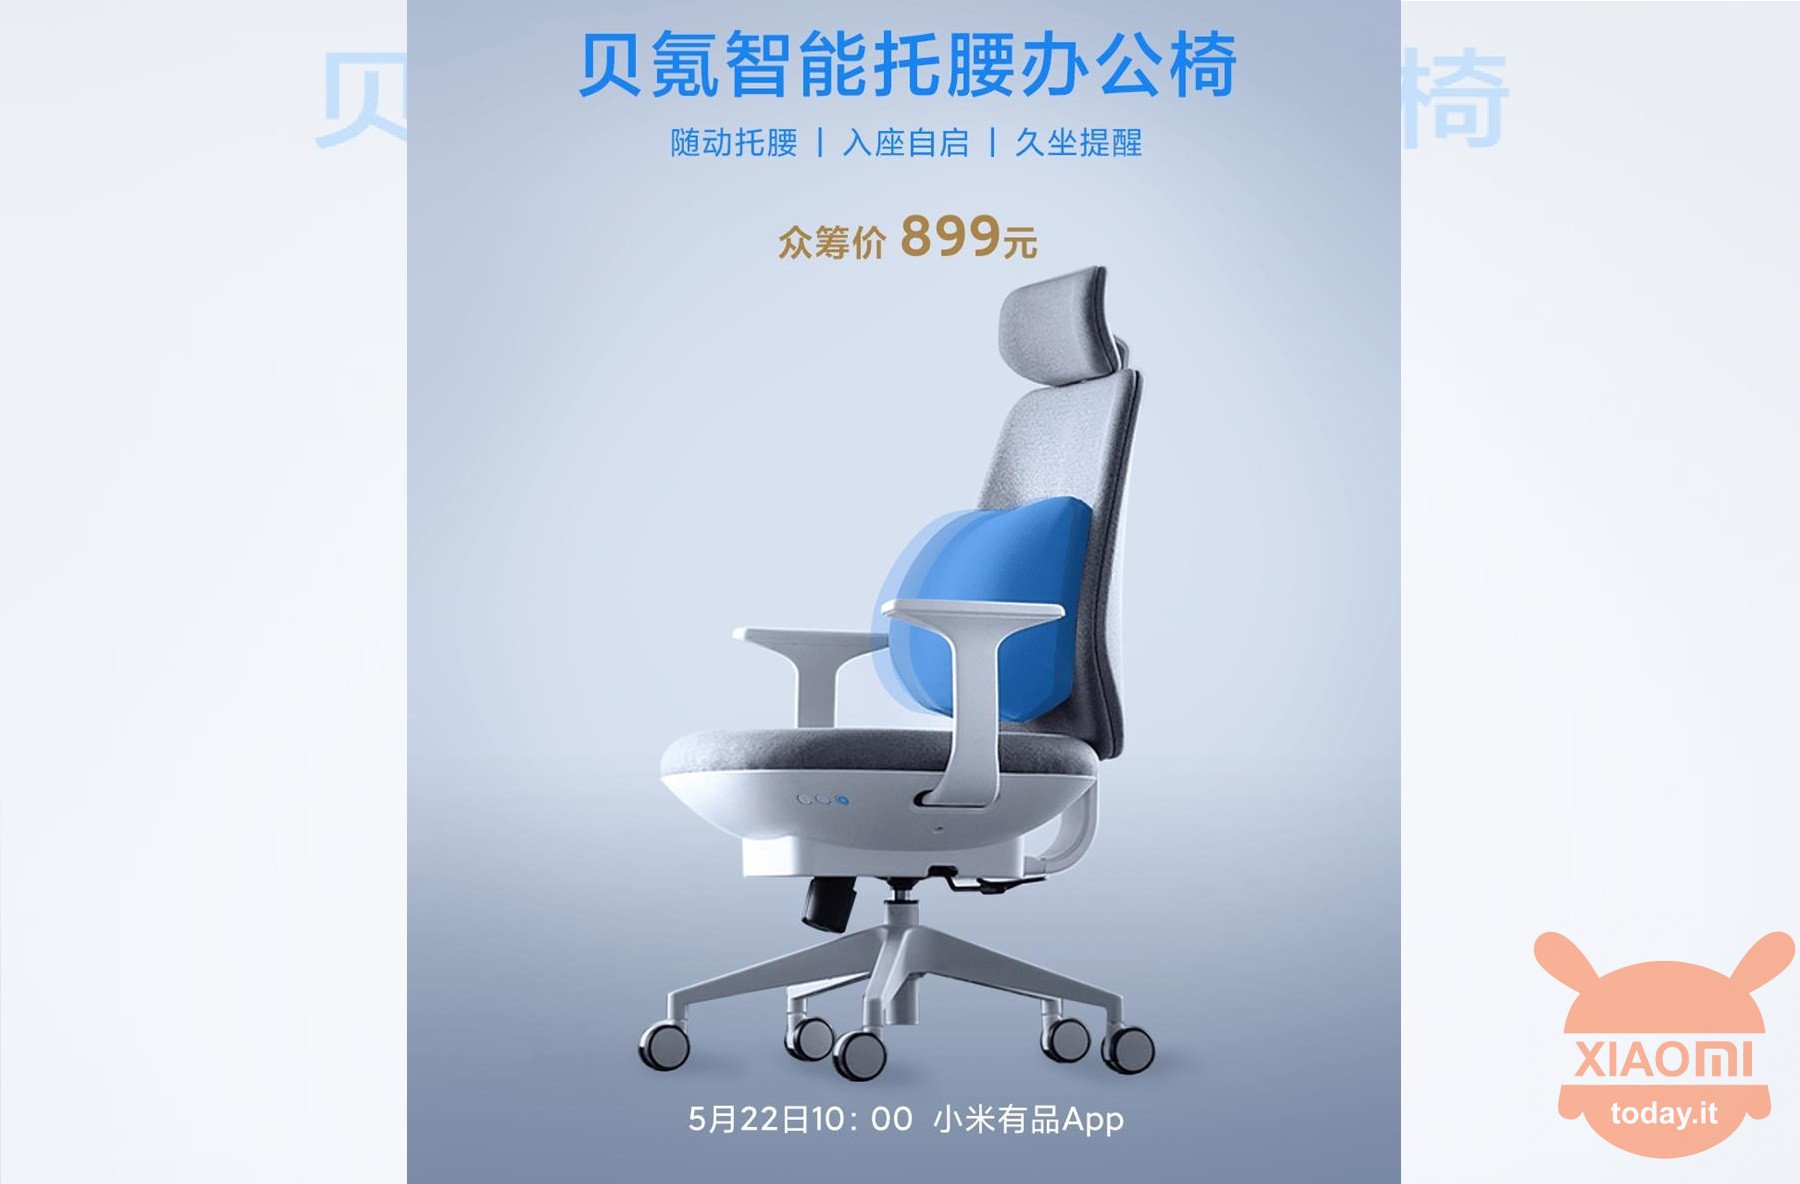 Backrobo Smart Office Chair